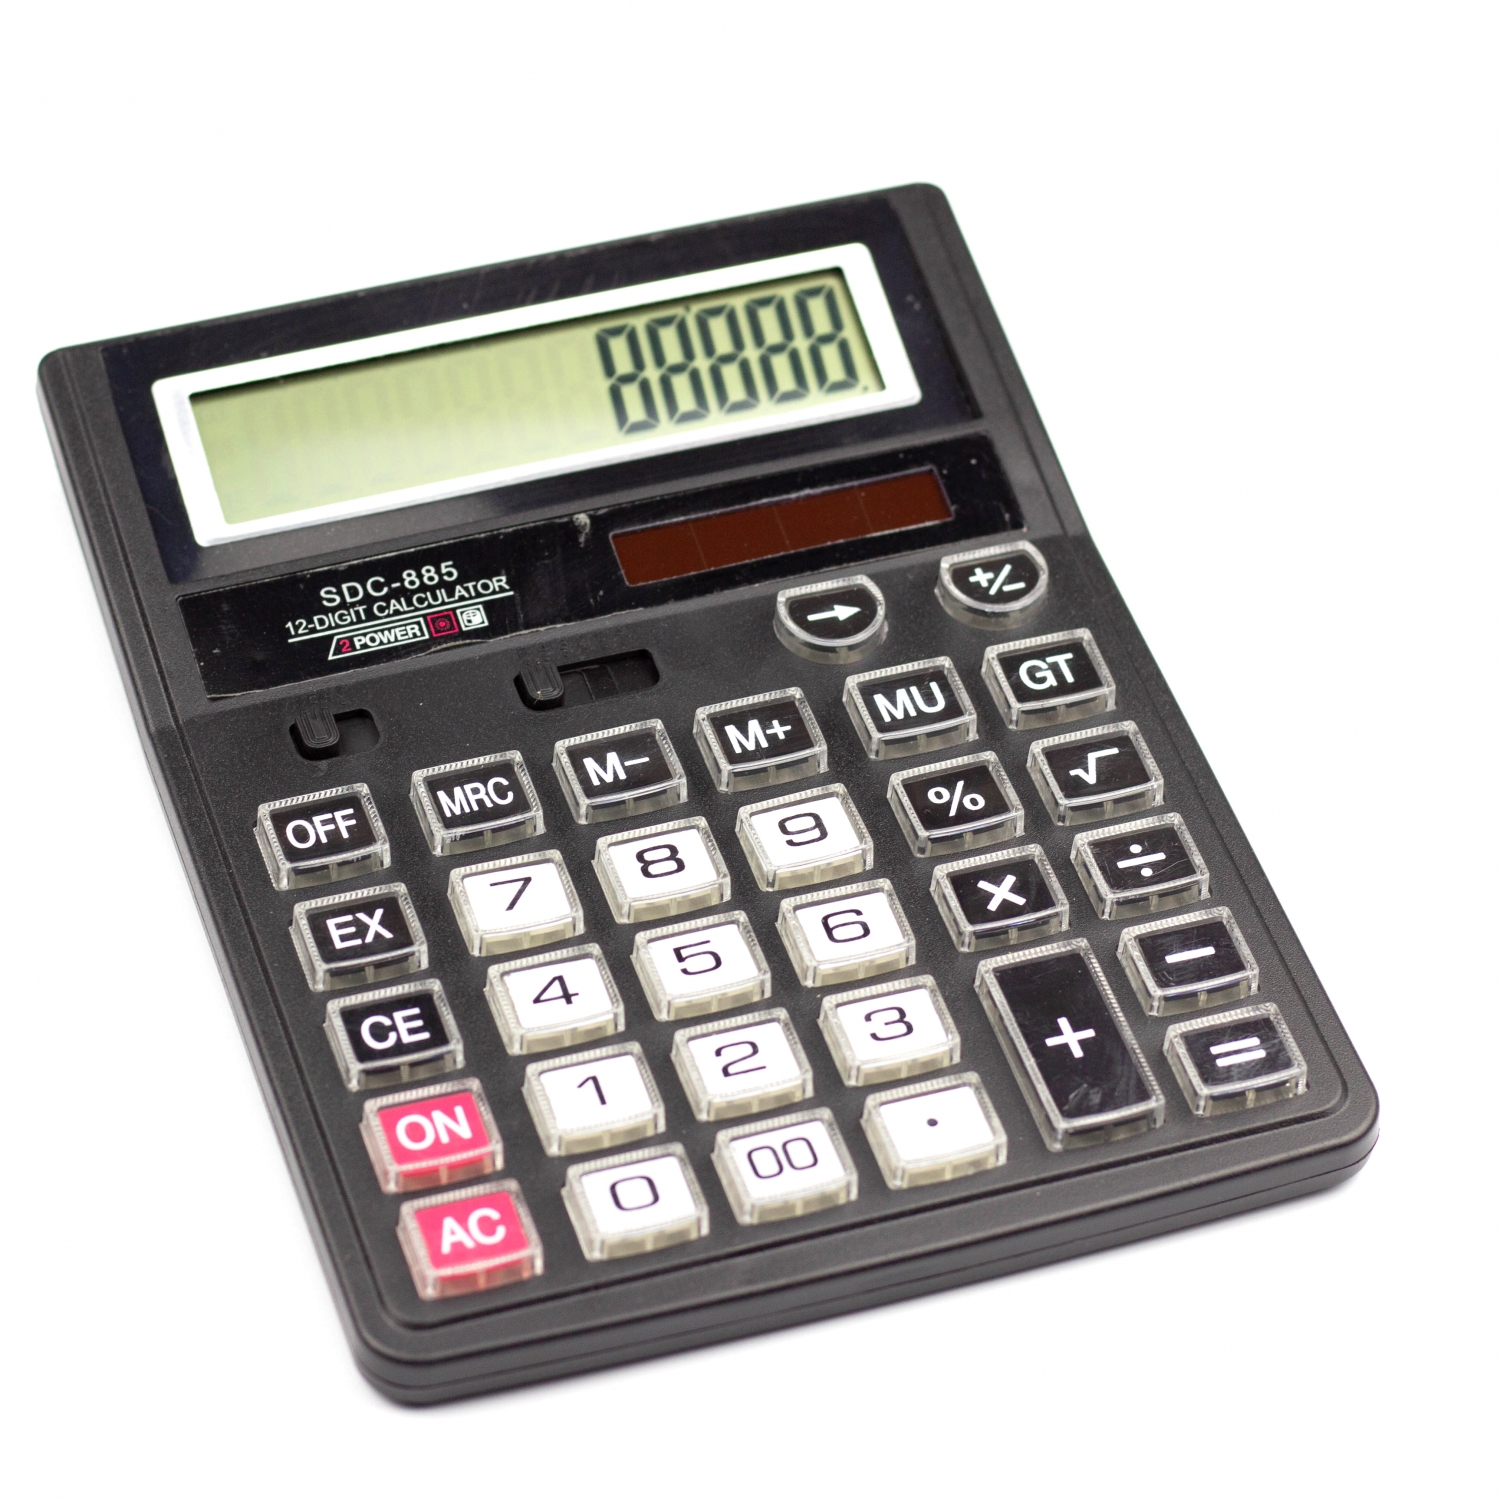 Калькулятор SDC-885 в коробке 12 разрядный AL6350 - Ульяновск 